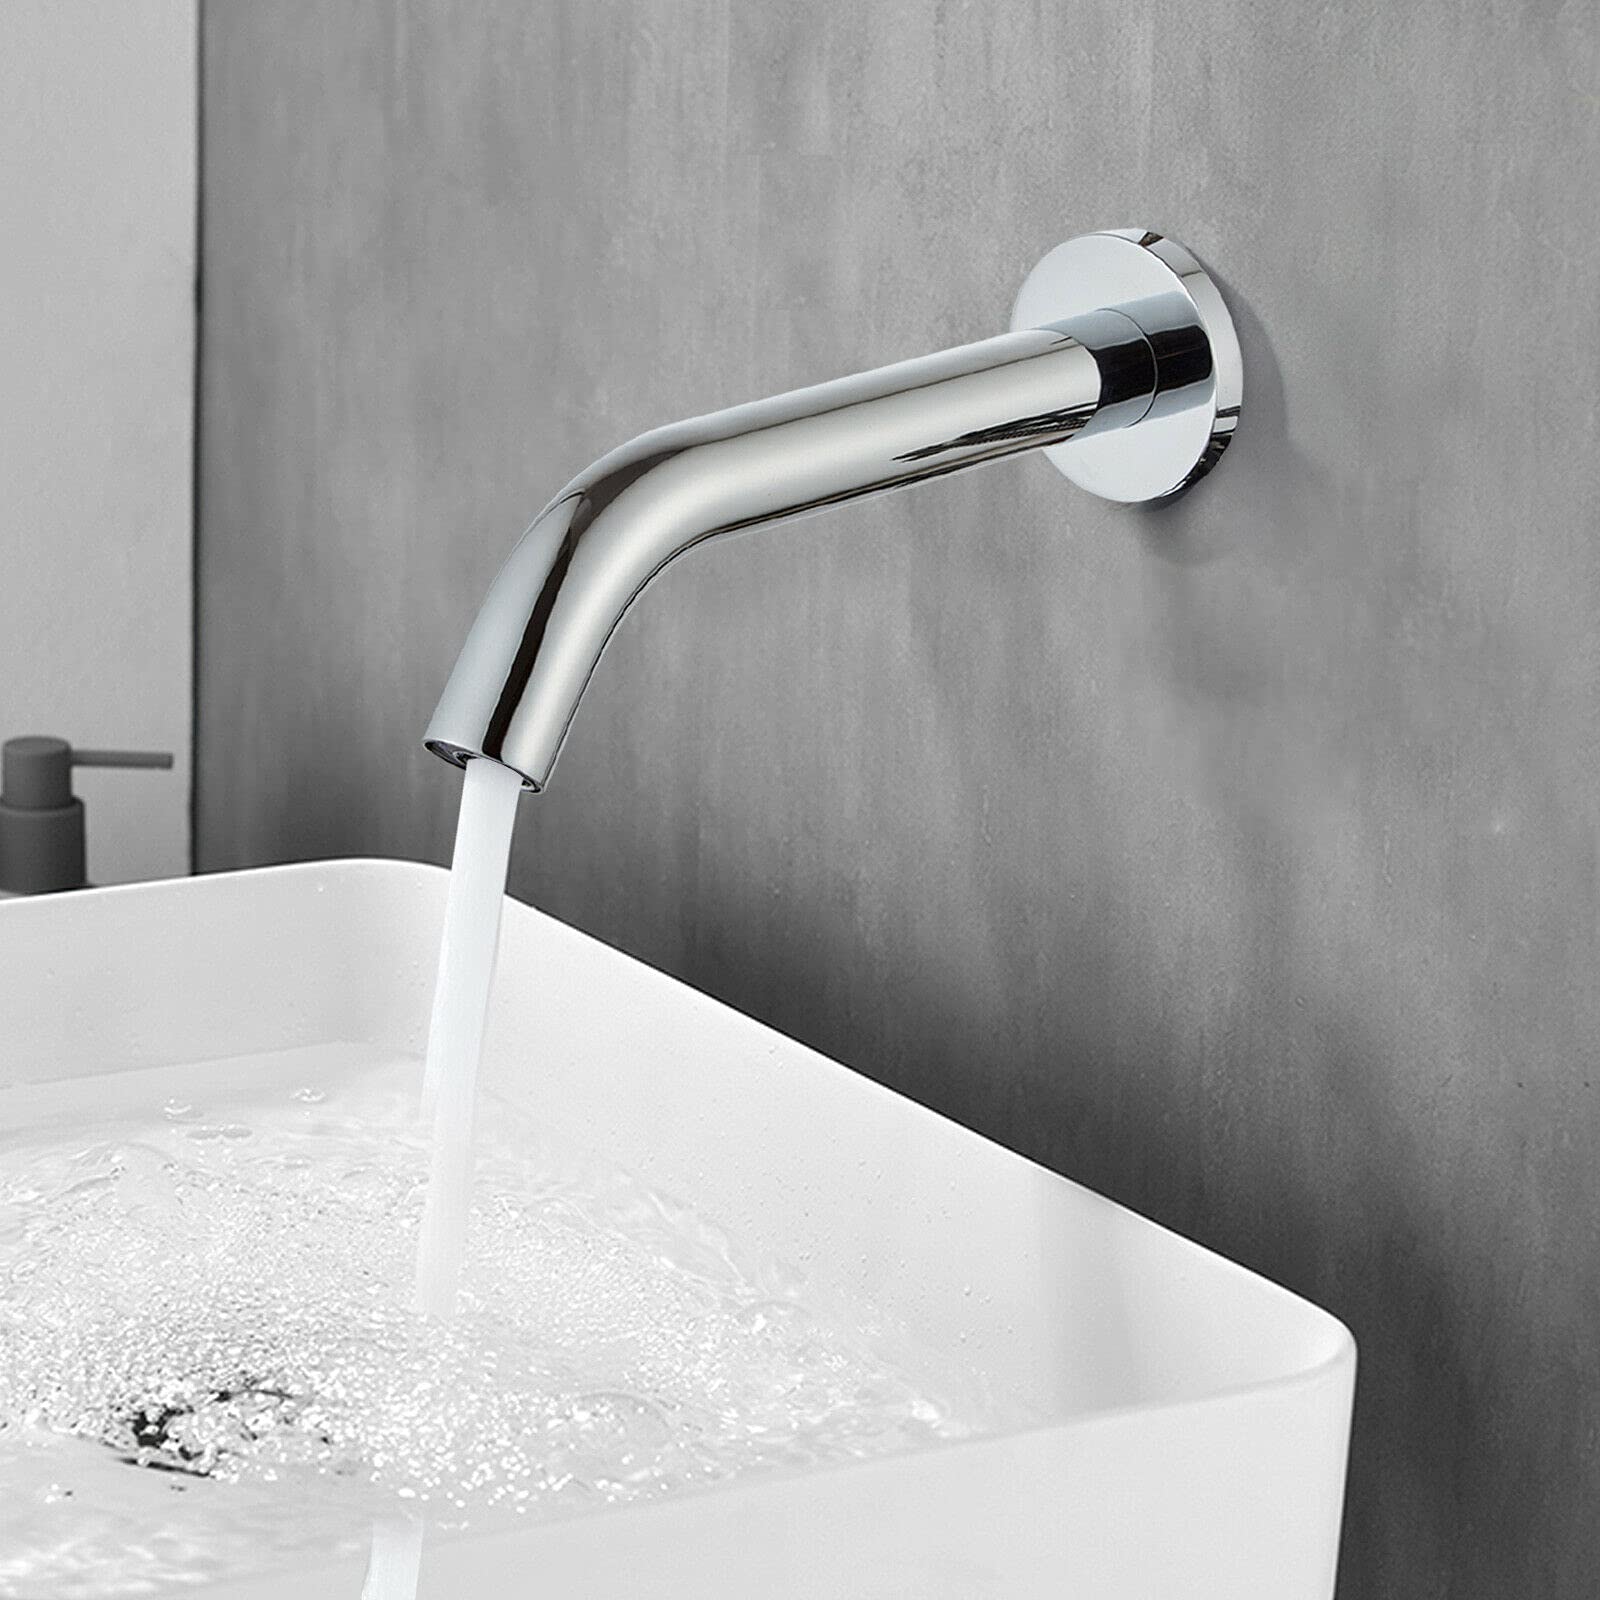 Rubinetto da bagno automatico con sensore a infrarossi montato a parete per acqua calda e fredda, in acciaio inox, rubinetto da bagno